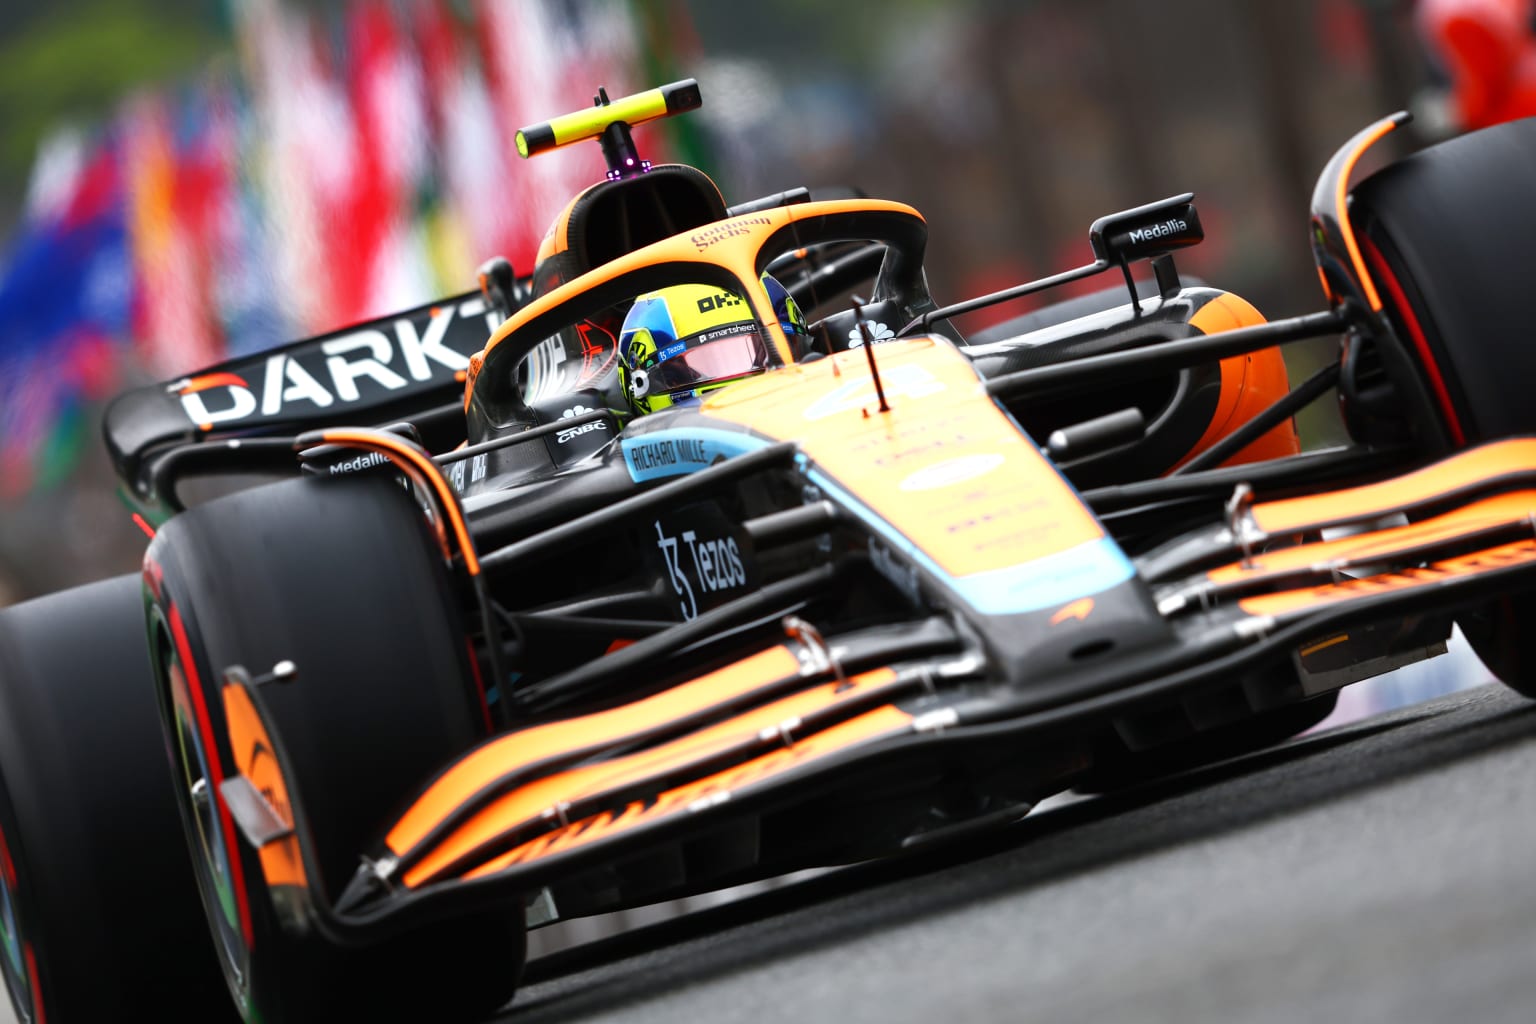 McLaren – F1 Racing Team